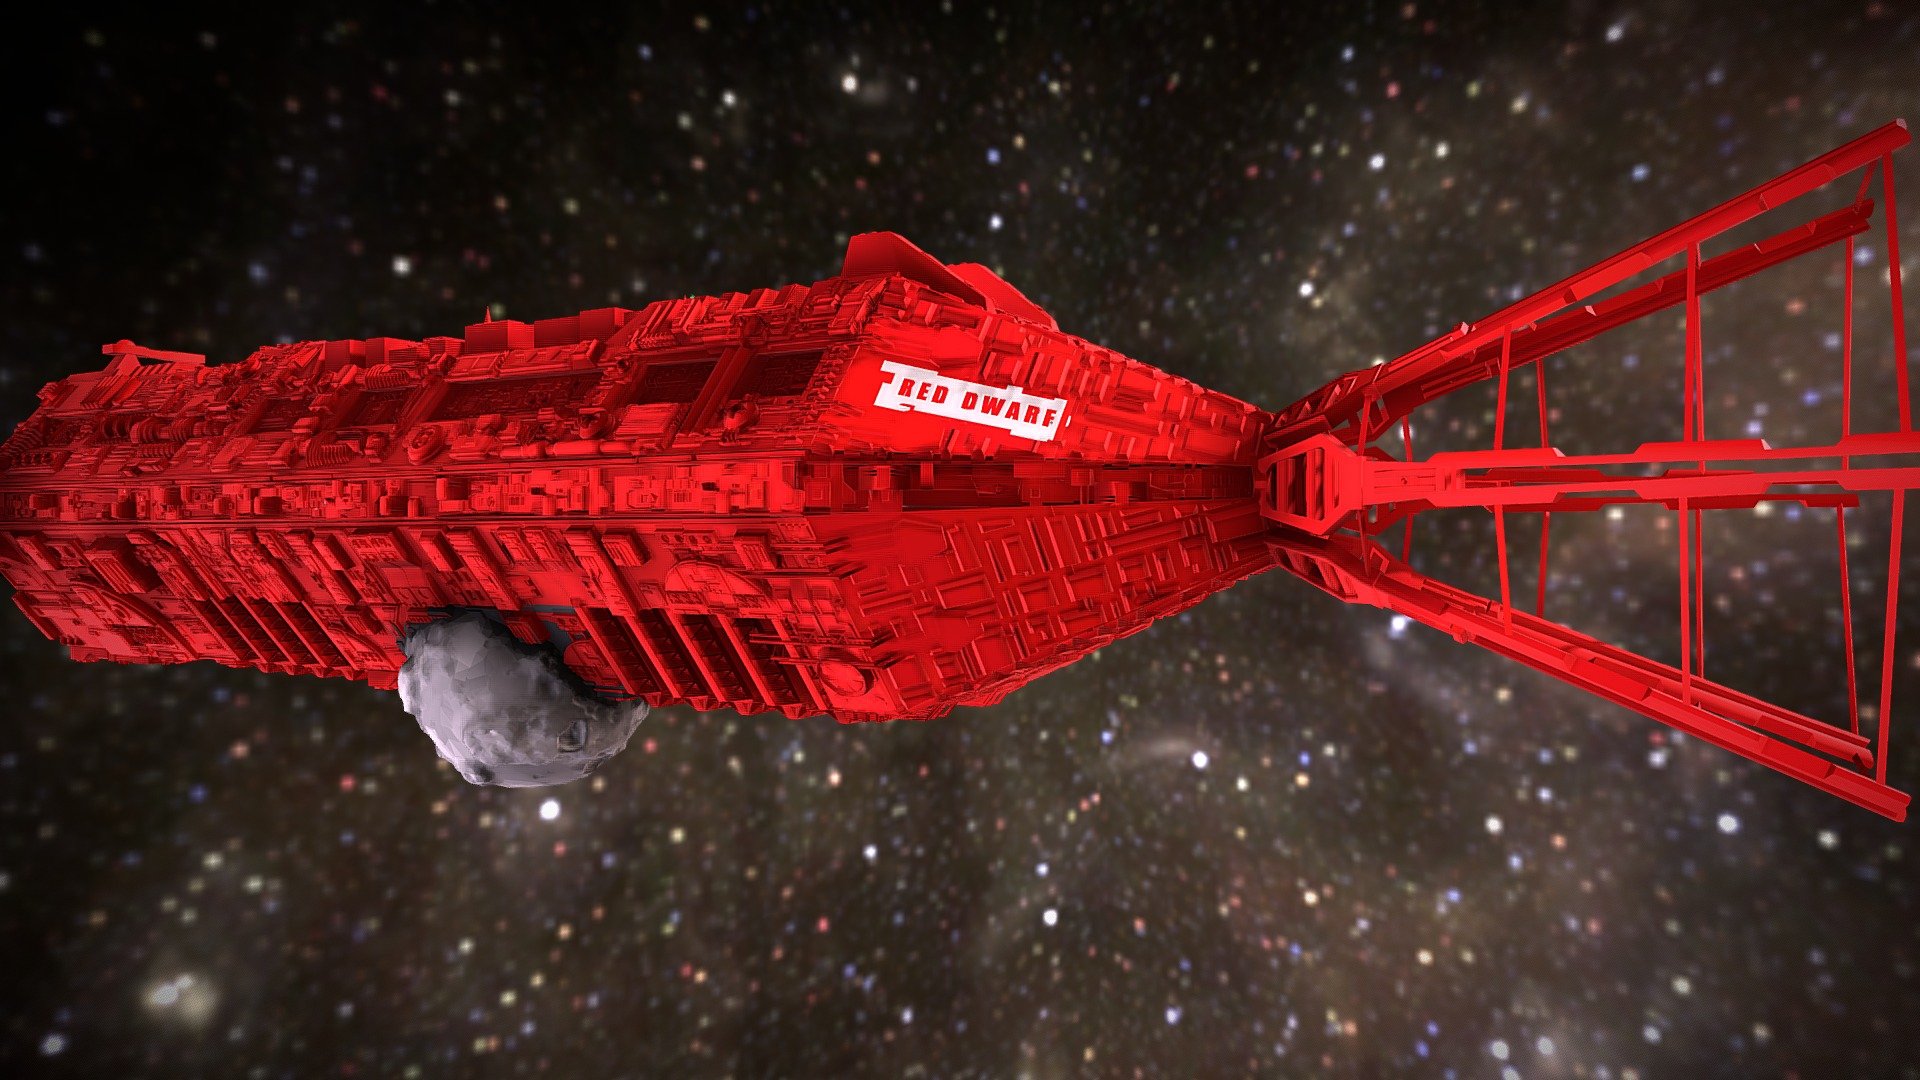 https://en.wikipedia.org/wiki/Red_Dwarf

FIND LISTER!
FIND STARBUG! - RED-DWARF-J M C MINING-SHIP-(10000m) - Download Free 3D model by Binkley-Spacetrucker (@Binkley-Piratepants) 3d model